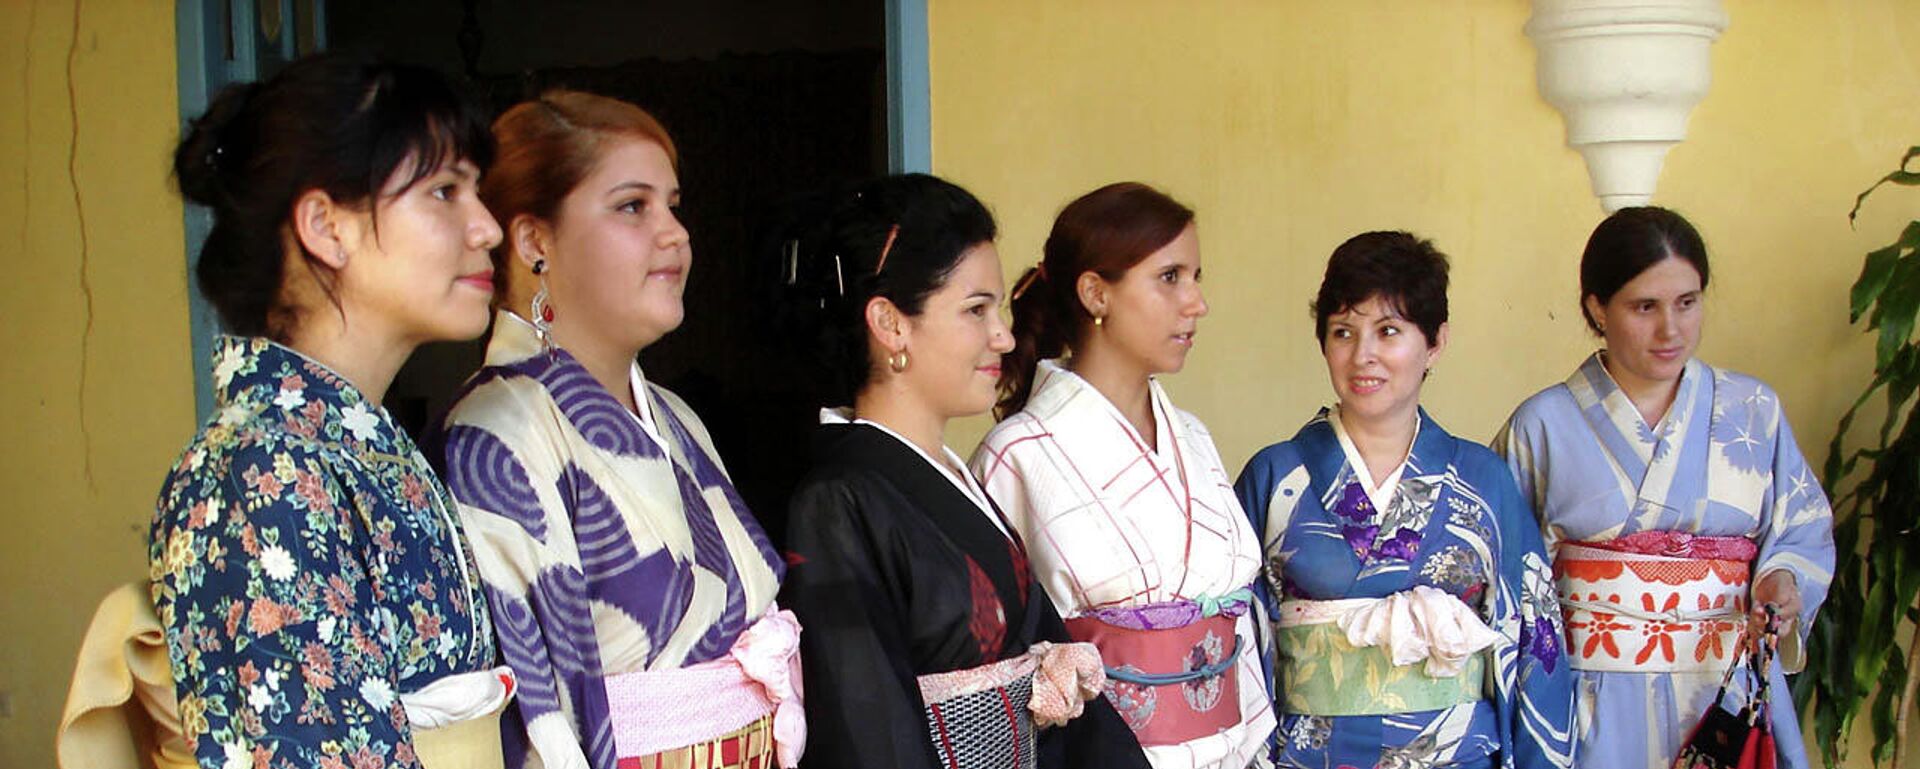 Desfile de kimonos y ropa tradicional japonesa, Día de la Cultura de Japón, Casa de la Obrapía, La Habana.  - Sputnik Mundo, 1920, 15.03.2021